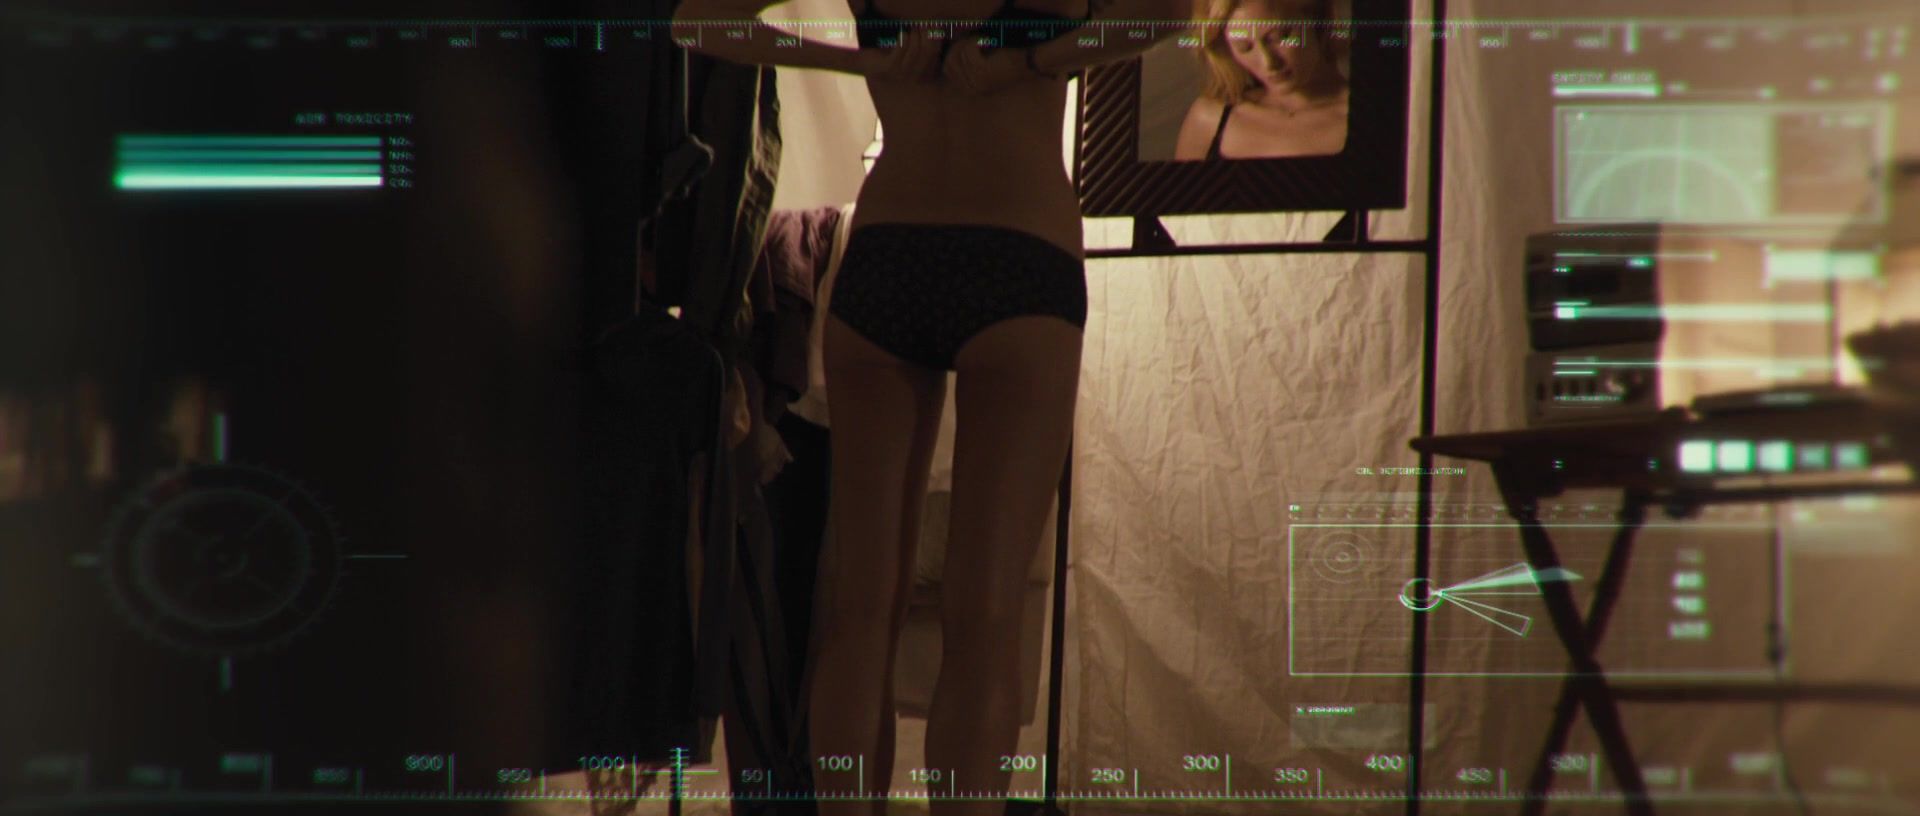 iTeenVideo Hot actress Ashley Hinshaw from movie The Pyramid (2014) Puba